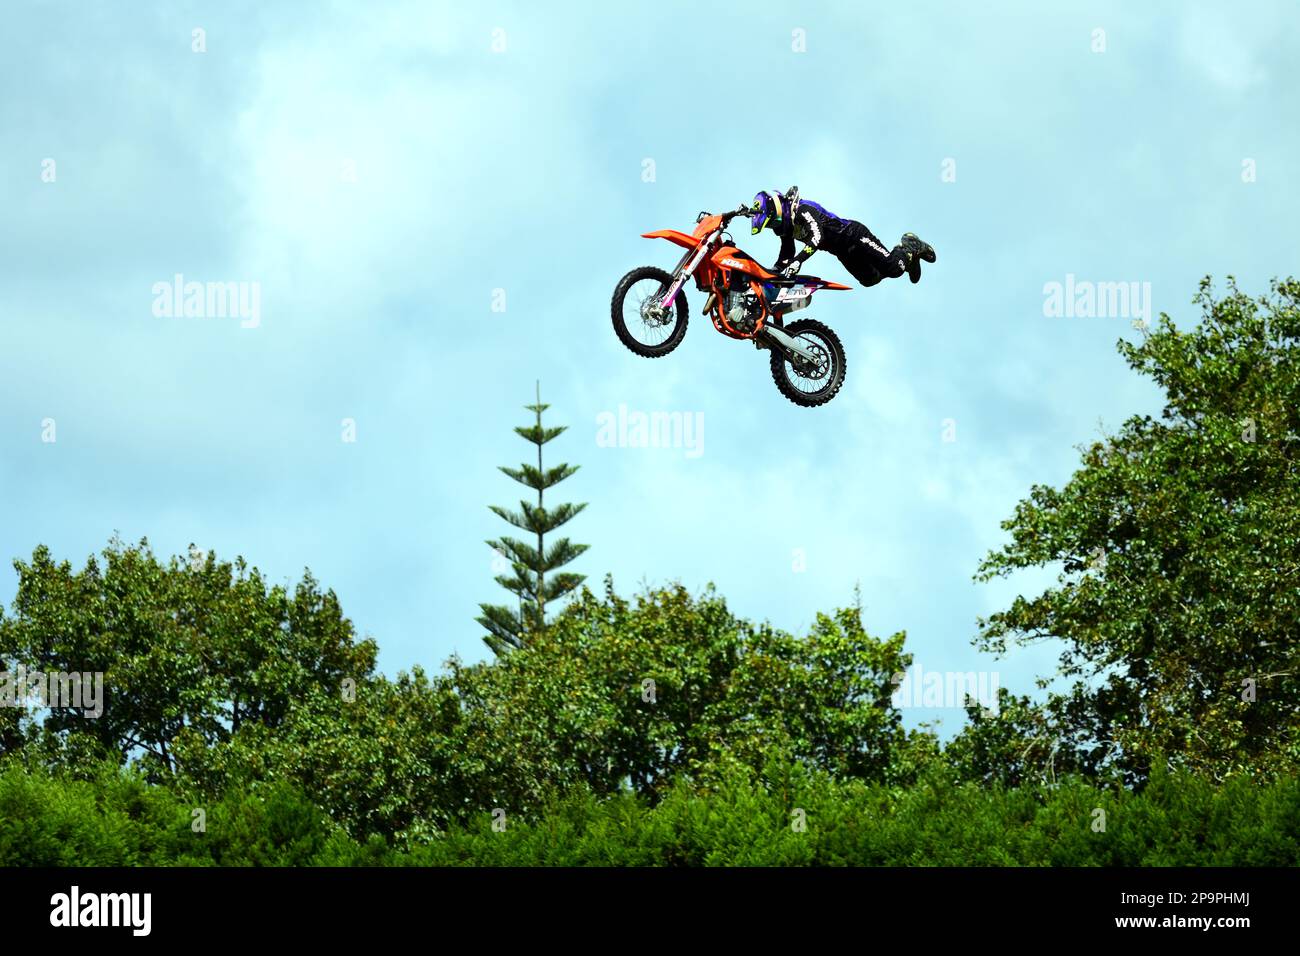 Auckland, Nouvelle-Zélande - mars 2023. Entraînement Dirtbike dans un parc. Un motard volant effectuant un saut dangereux. Banque D'Images